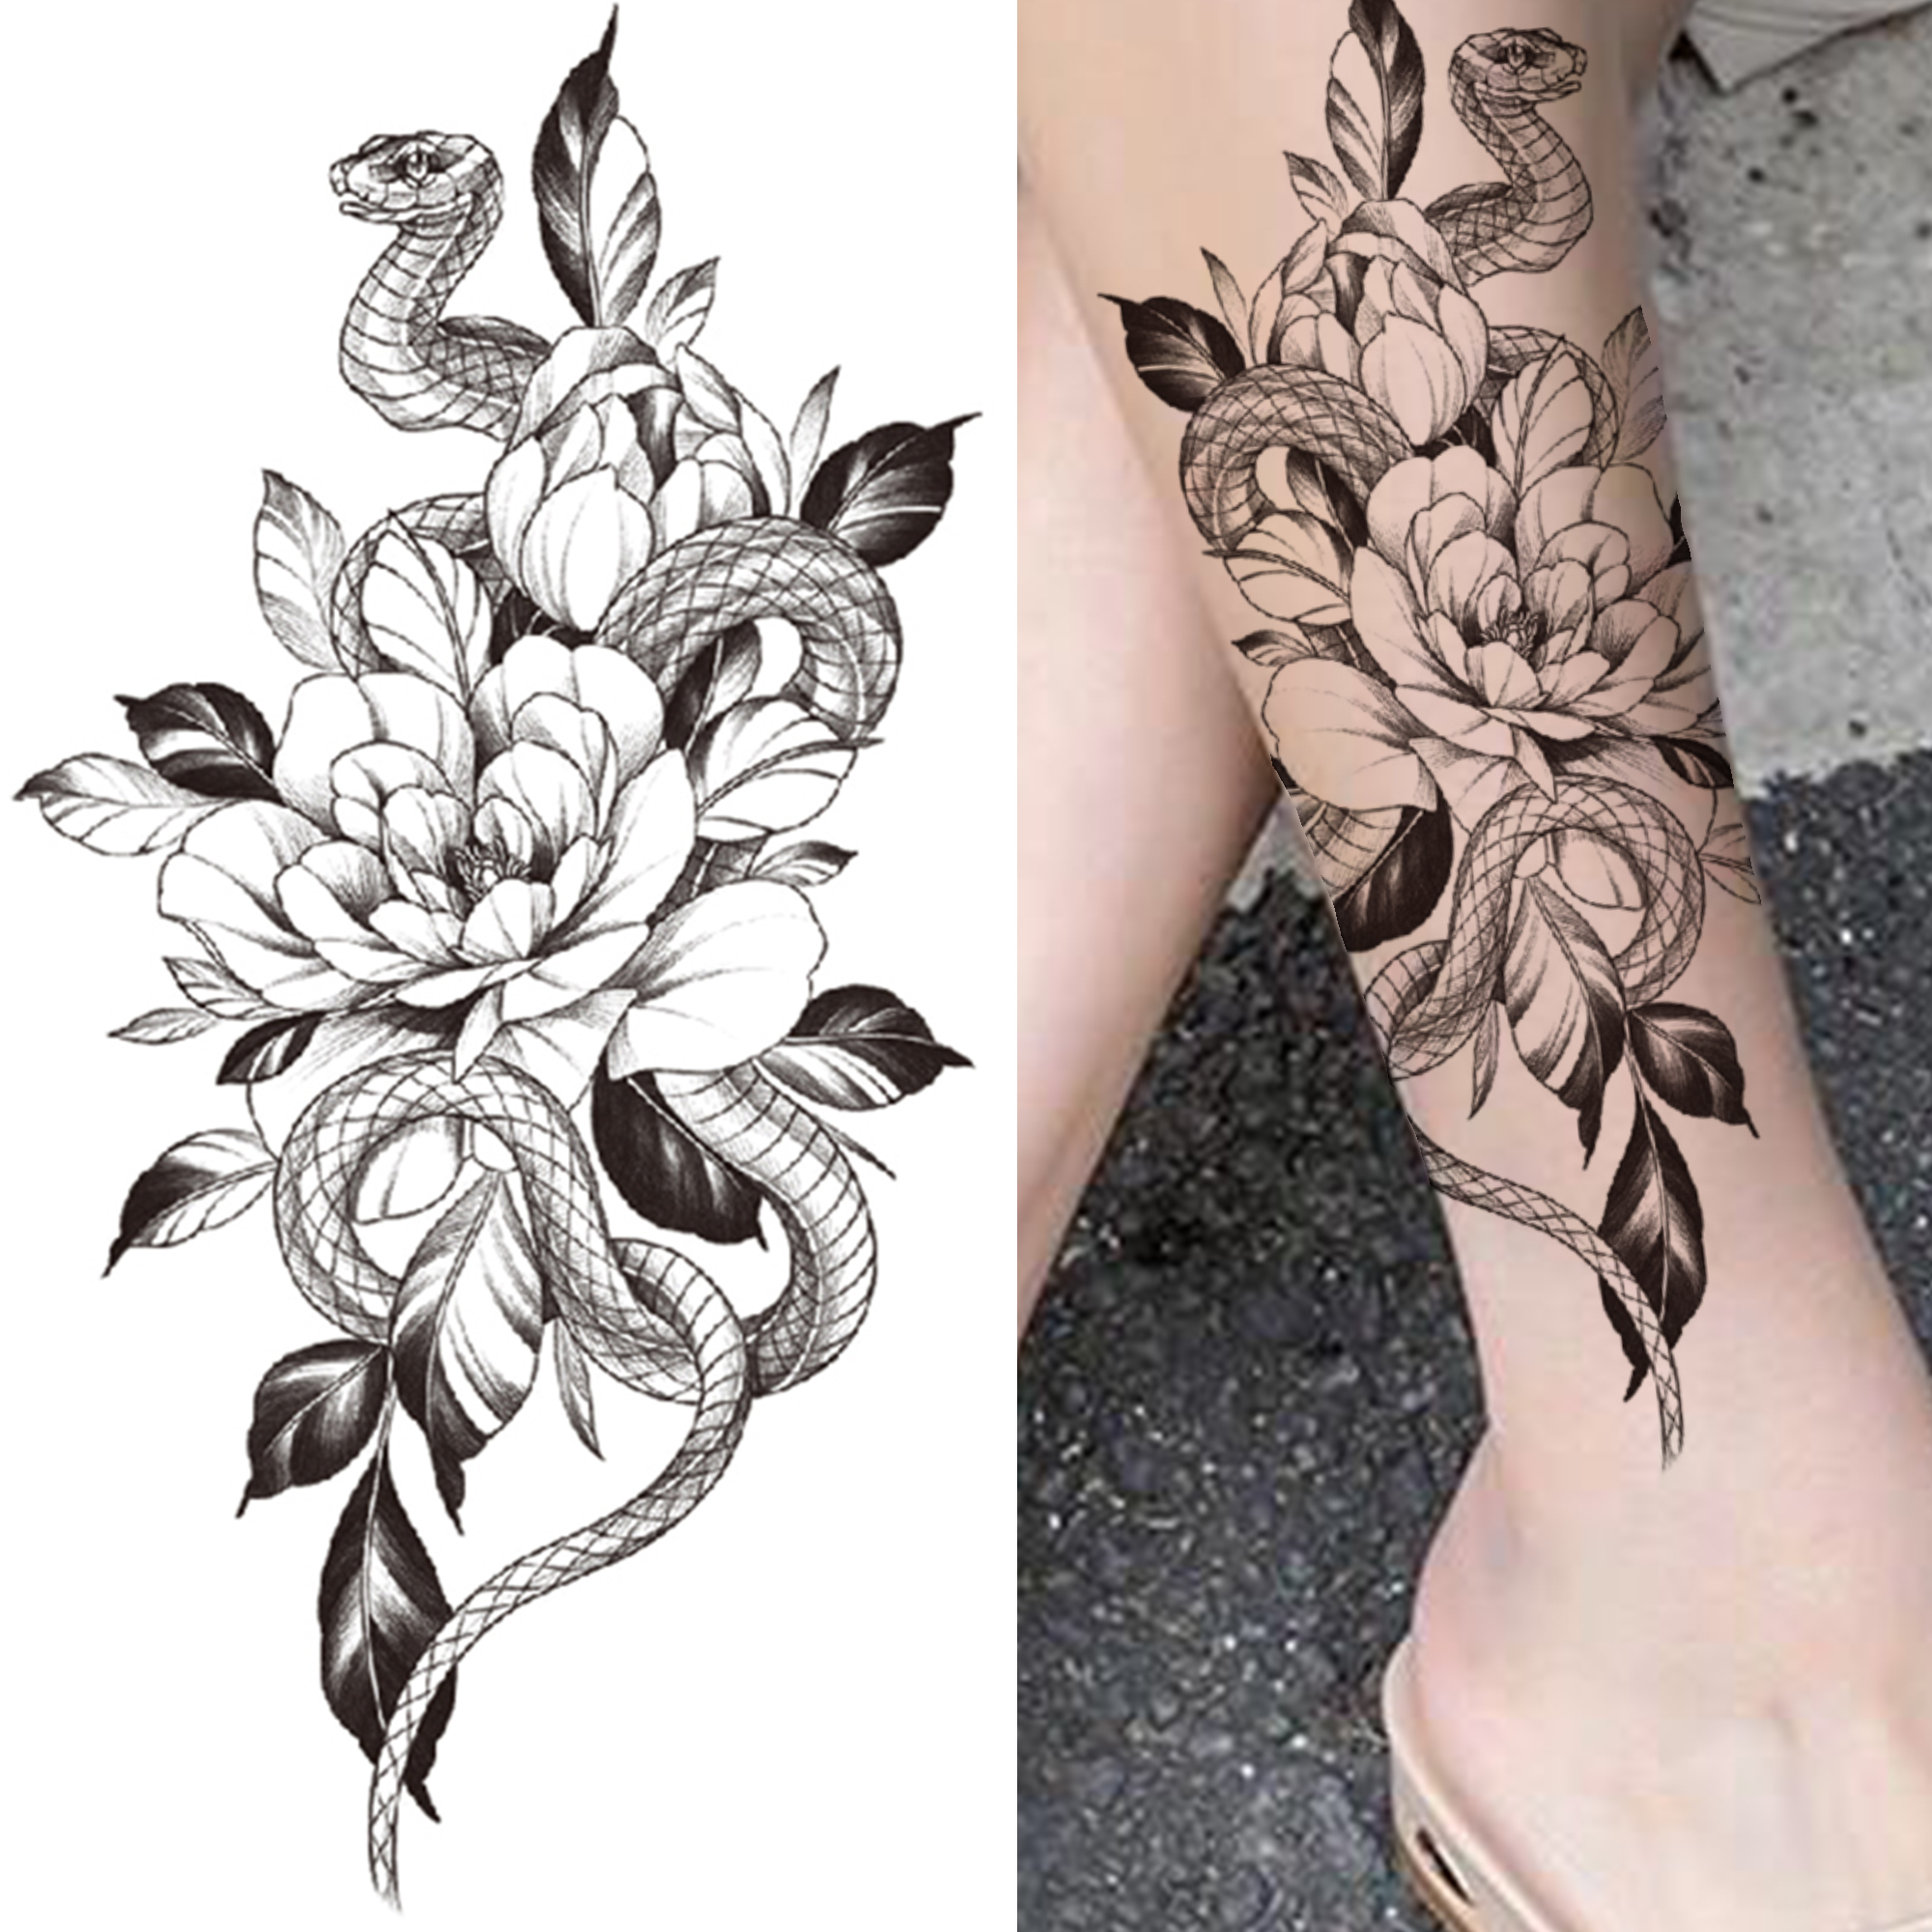 PerfectionsRealistische Slang Bloem Tijdelijke Tatoeages Voor Vrouwen Meisjes Zwarte Anemone Orchidee Rose Sticker Fake Self Tatoo Uit China Overige Tattoo Benodigdheden Verkoper Perfections |DHgate